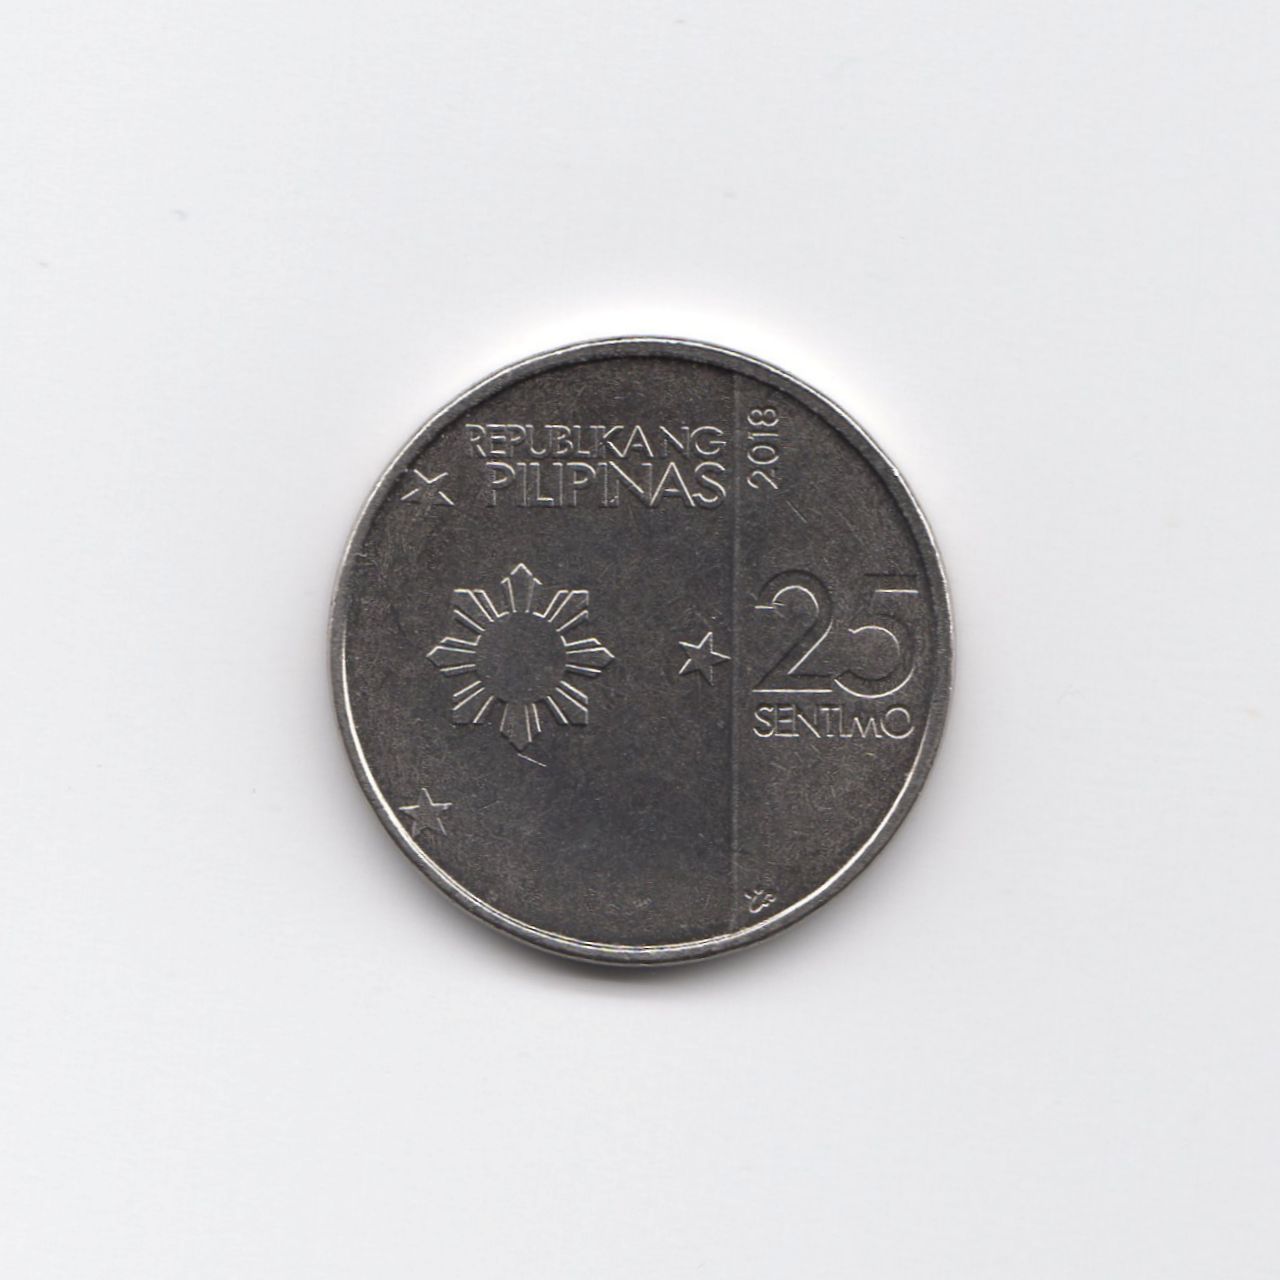 フィリピンの硬貨 2018年 25 SENTIMO